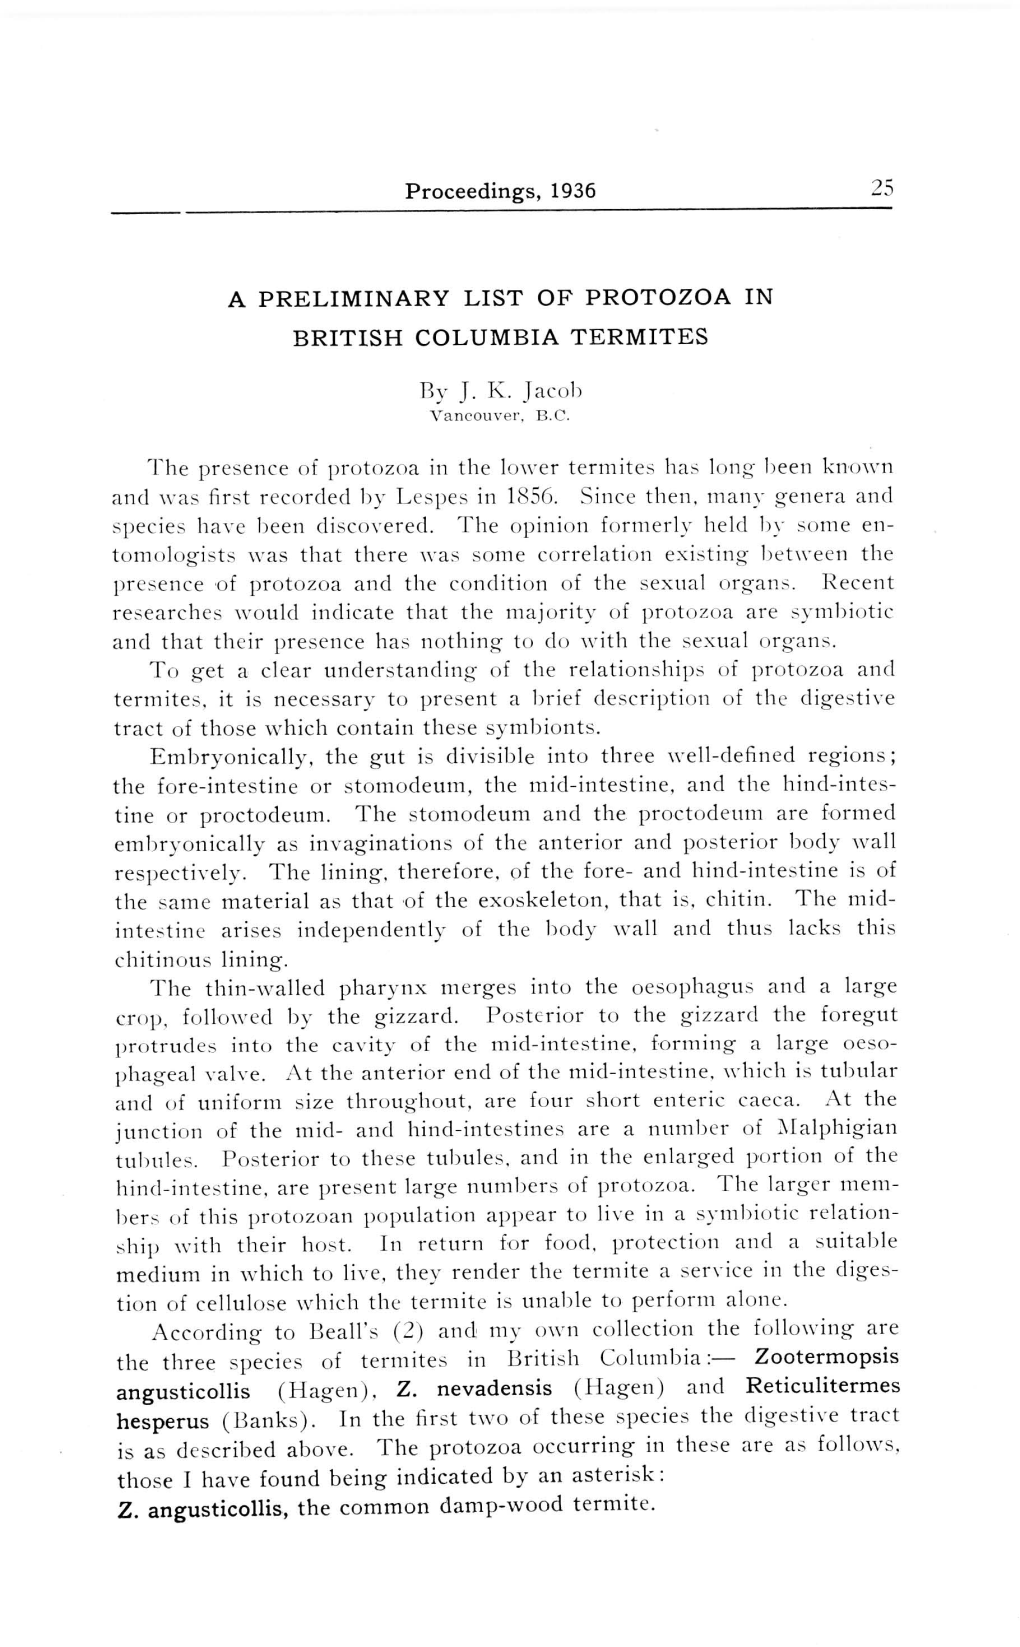 Proceedings, 1936 a PRELIMINARY LIST of PROTOZOA in BRITISH